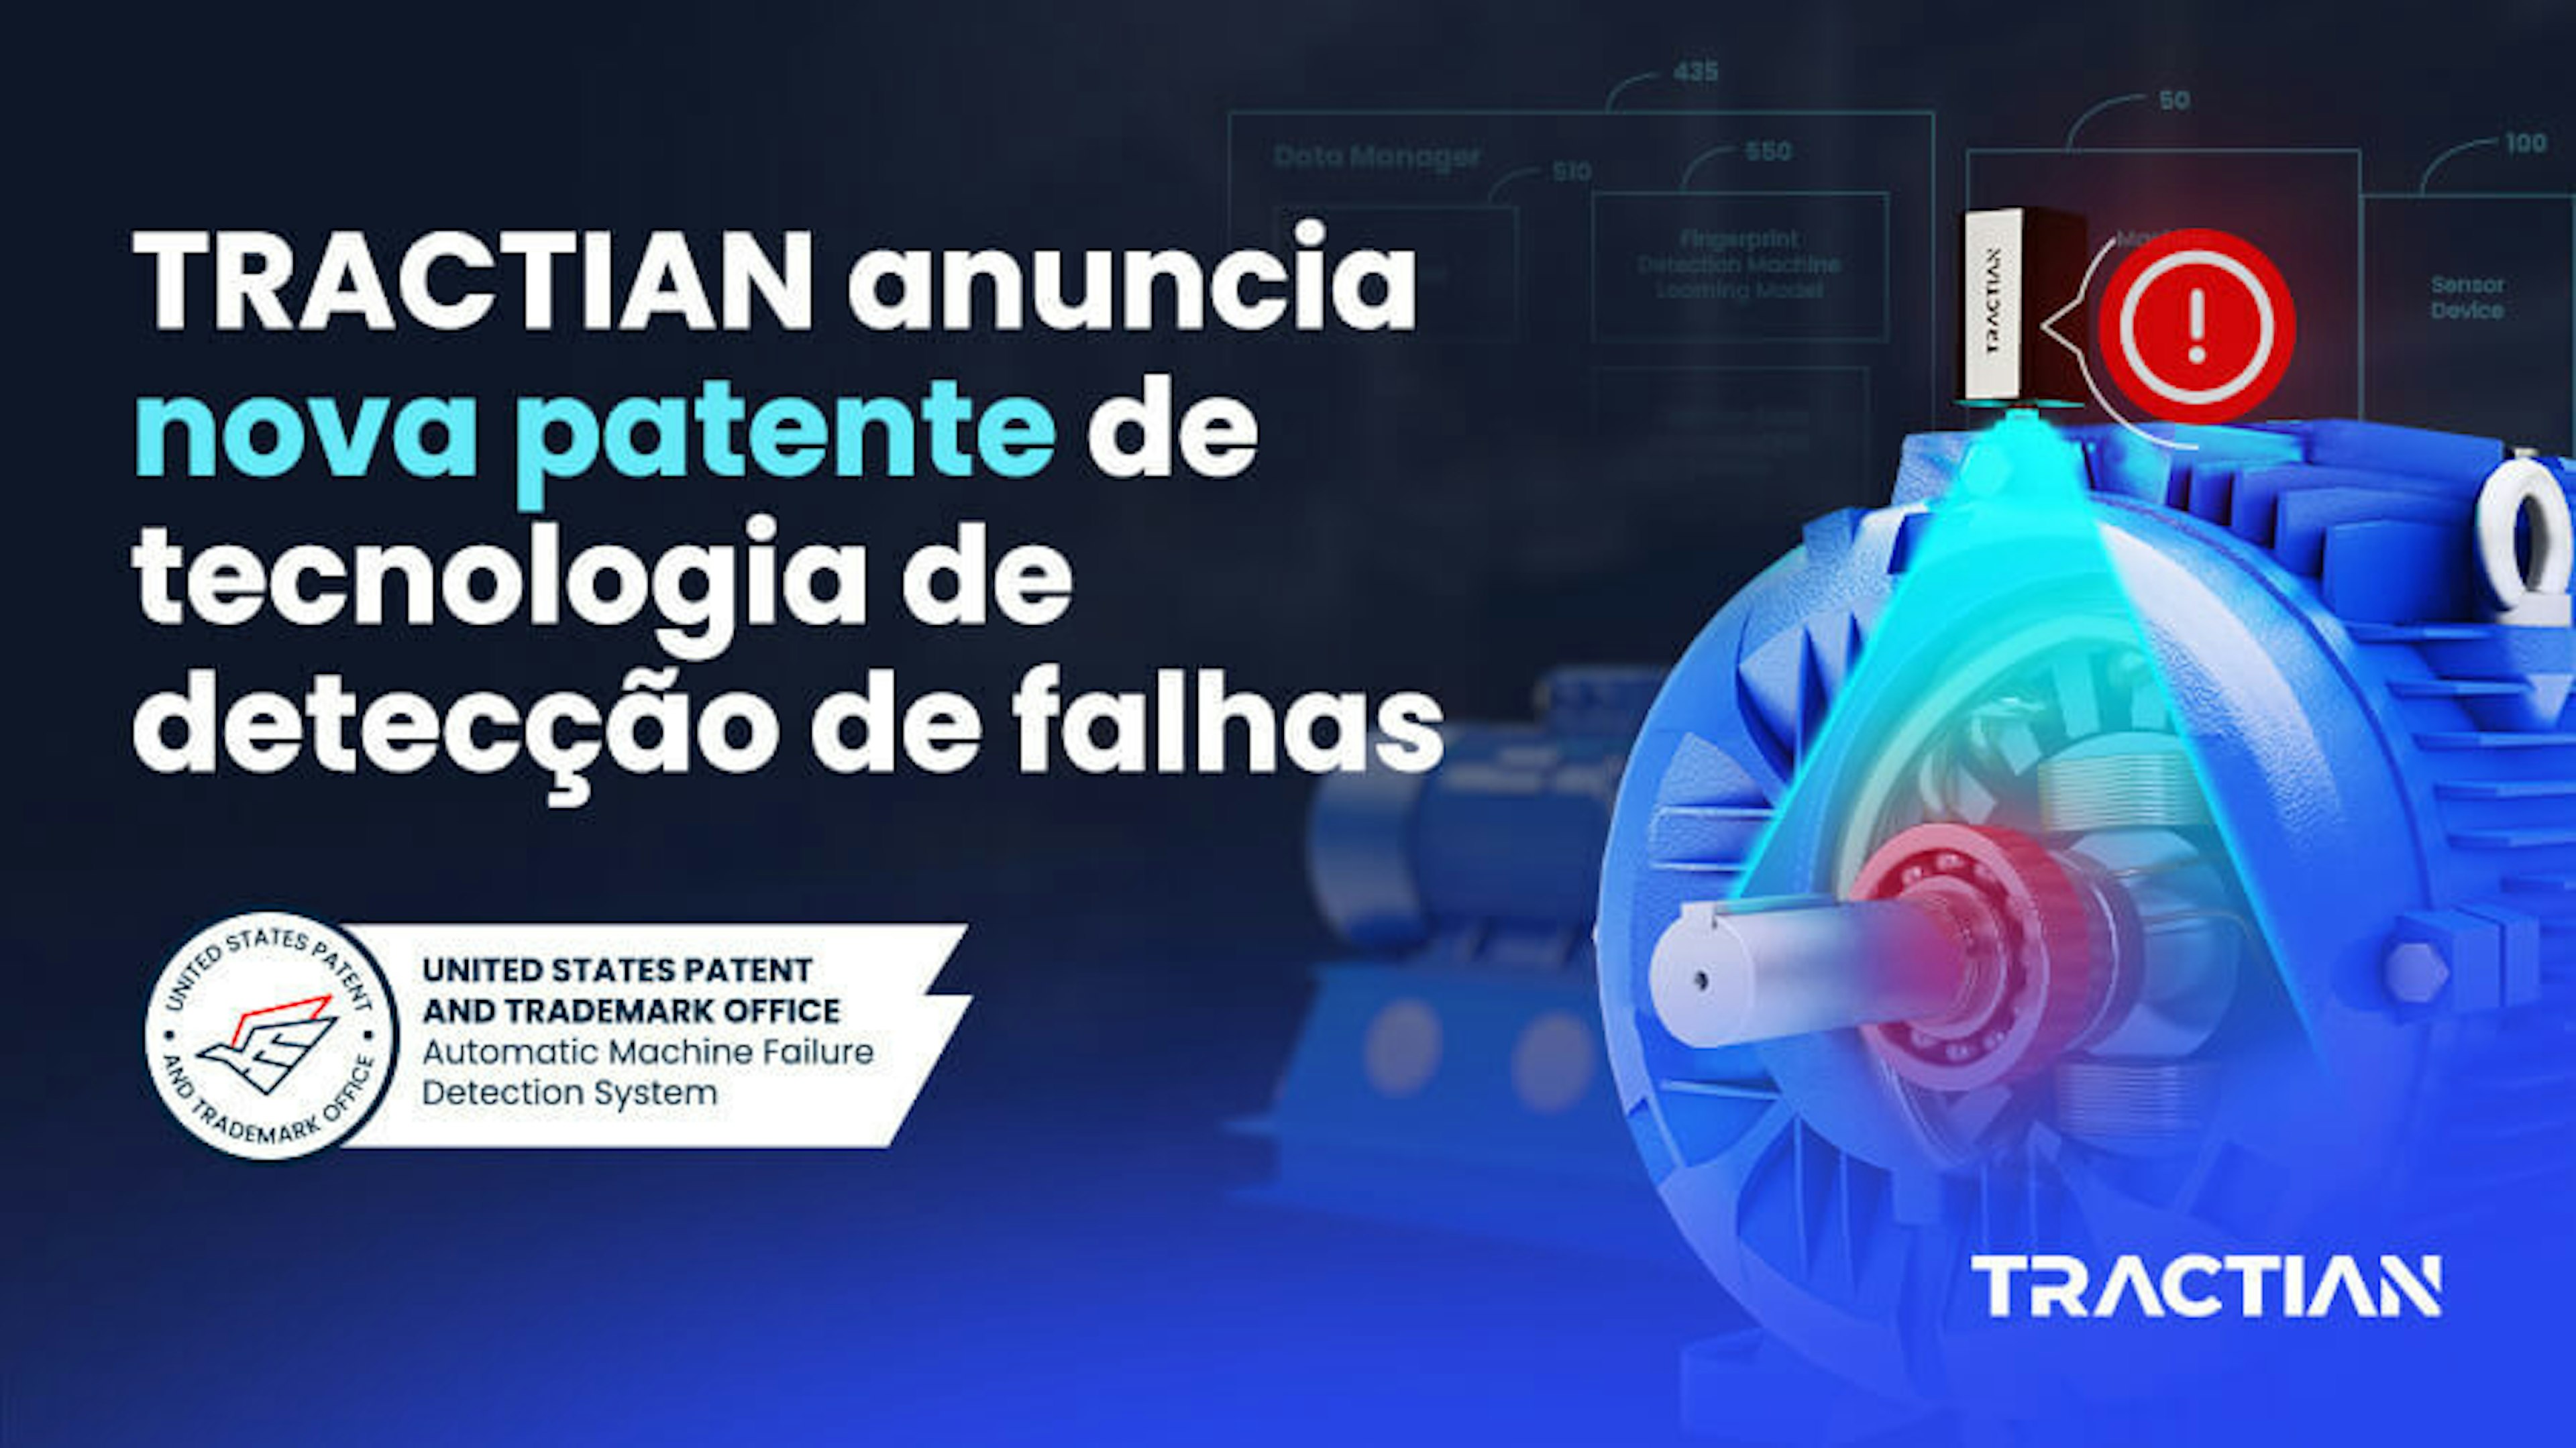 TRACTIAN anuncia nova patente de tecnologia de detecção de falhas